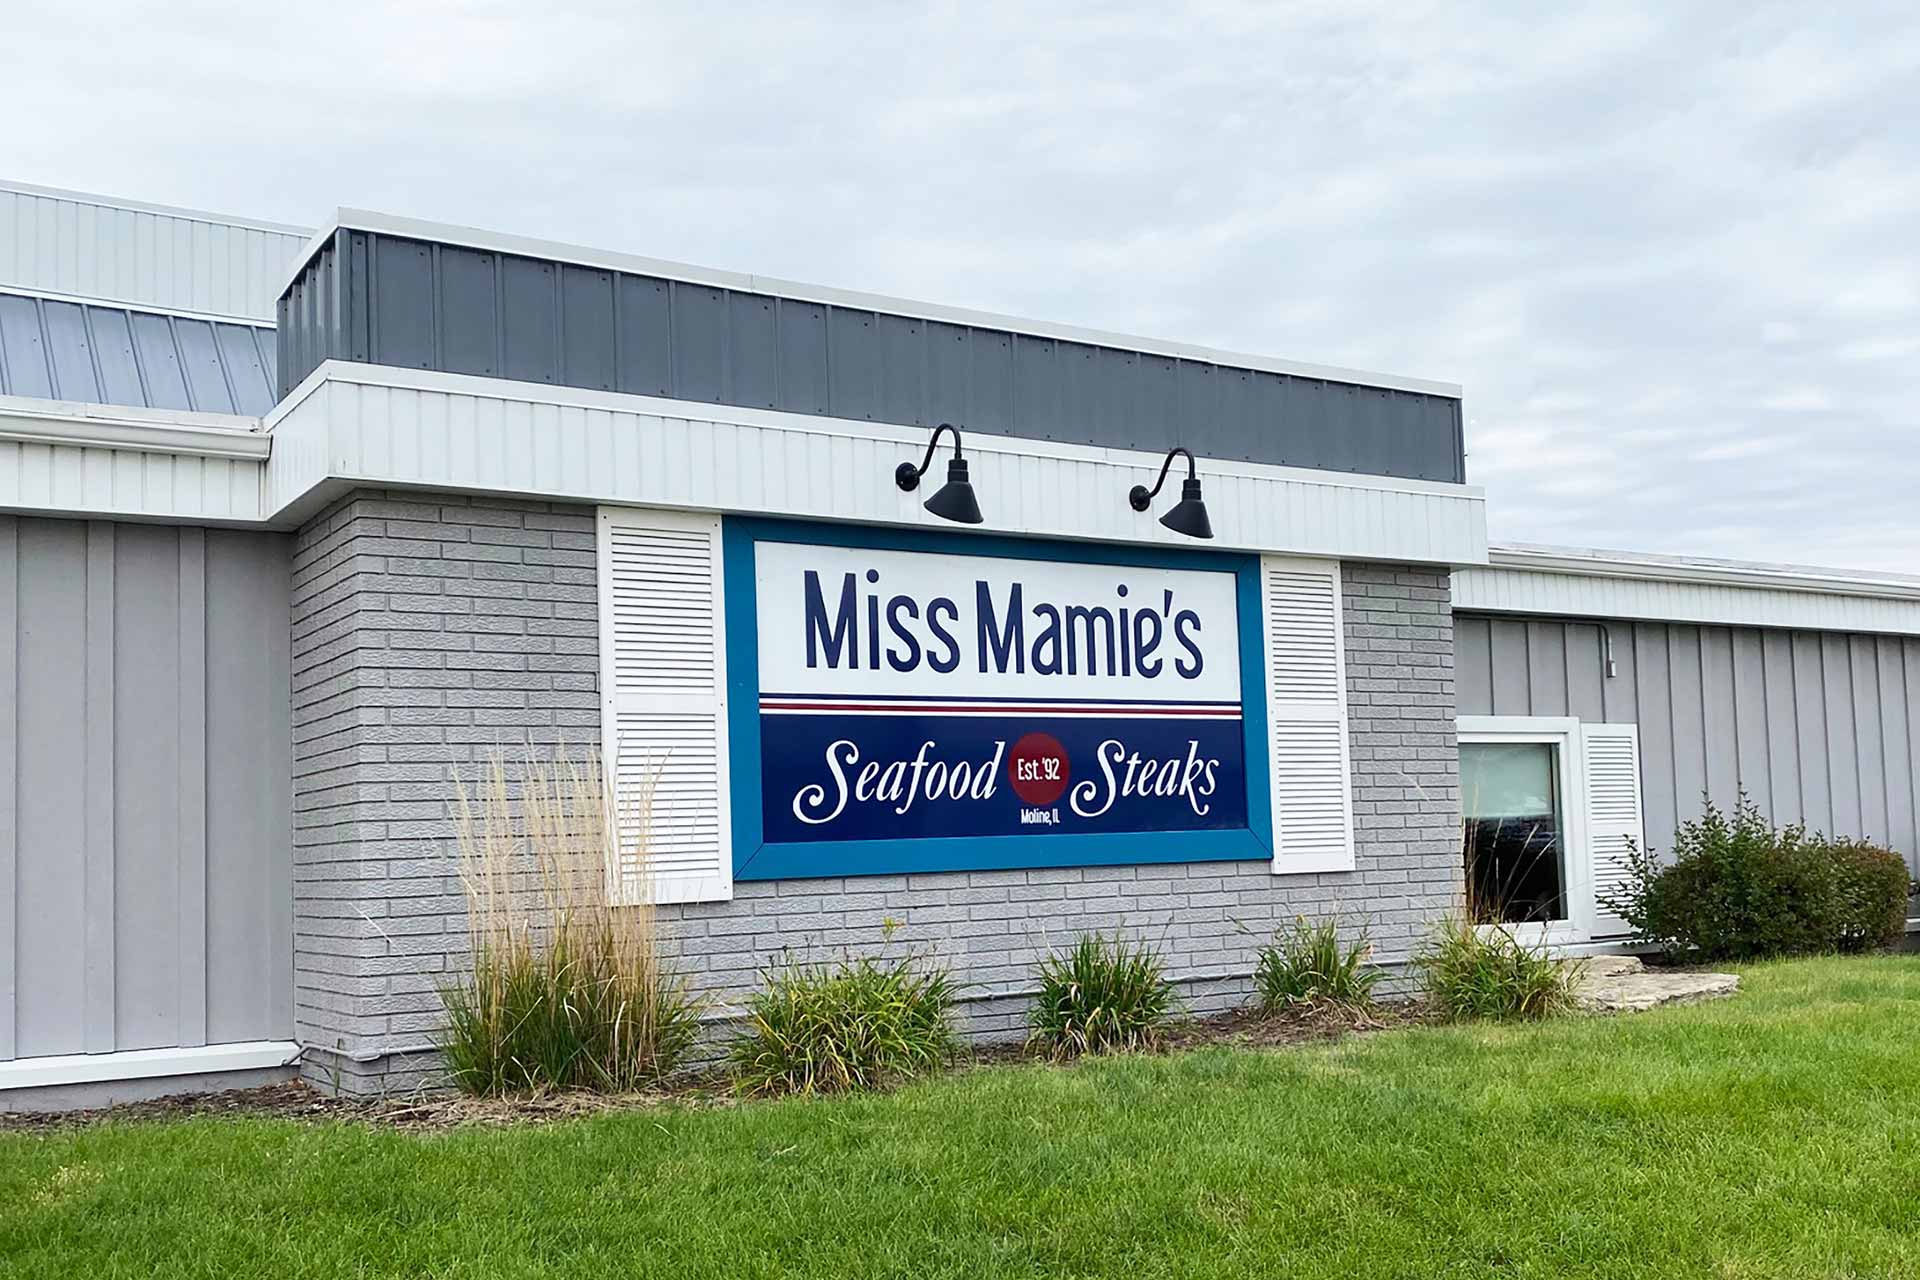 Miss Mamie's Seafood & Steaks